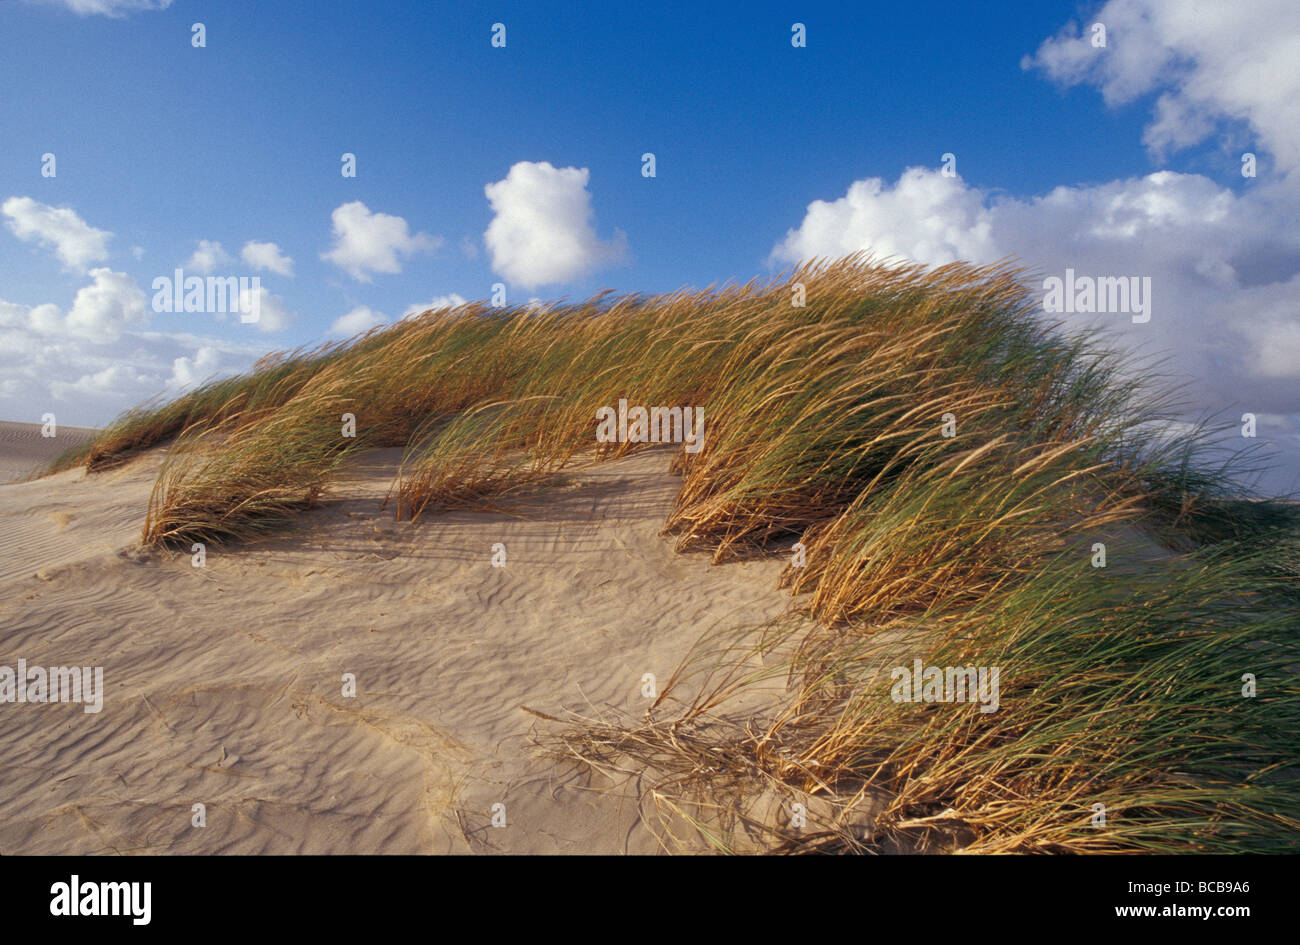 El viento sopla matas de pasto precariamente conectado a una duna de arena. Foto de stock